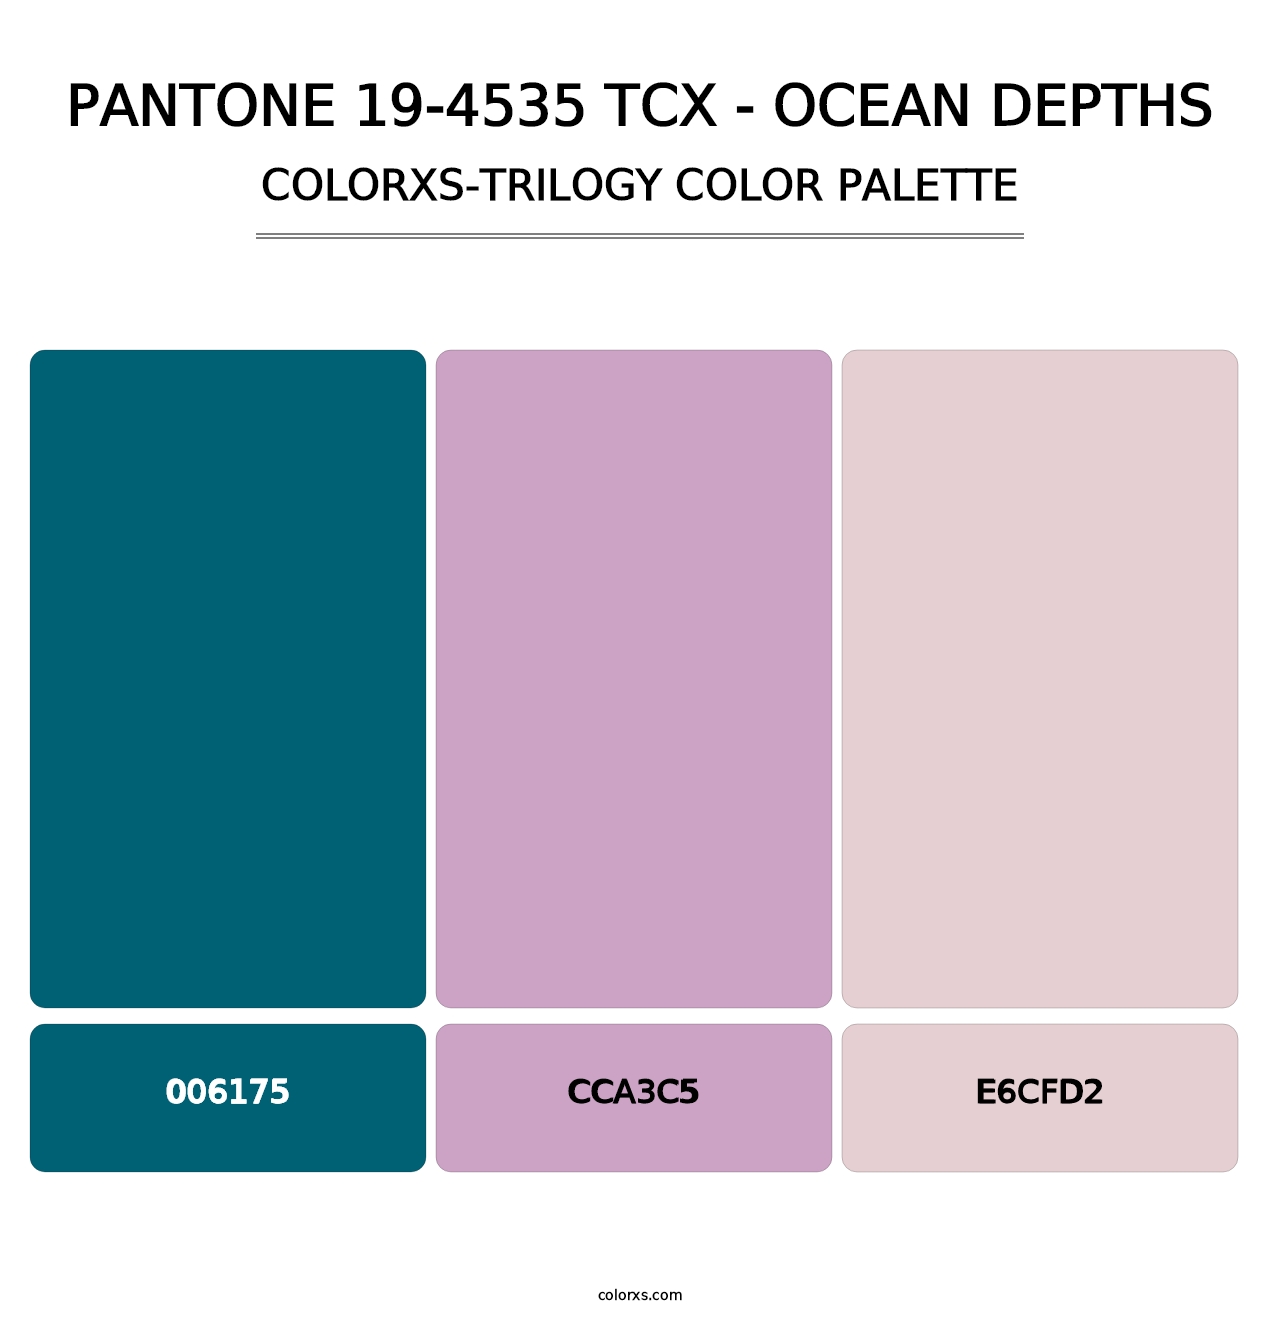 PANTONE 19-4535 TCX - Ocean Depths - Colorxs Trilogy Palette